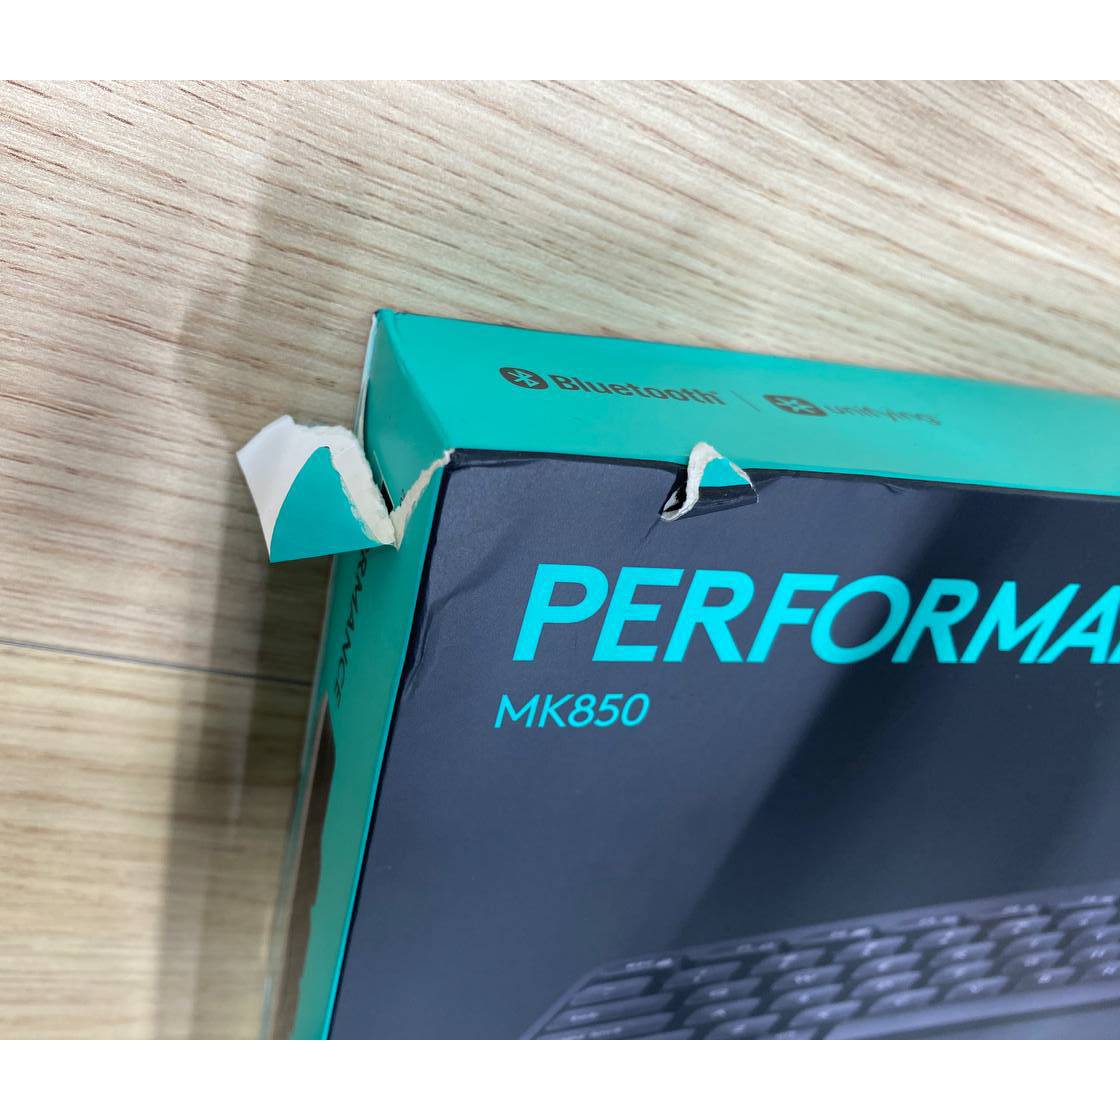 Фото — Комплект (клавиатура и мышь) Logitech MK850 Perfomance, USB, беспроводной, черный